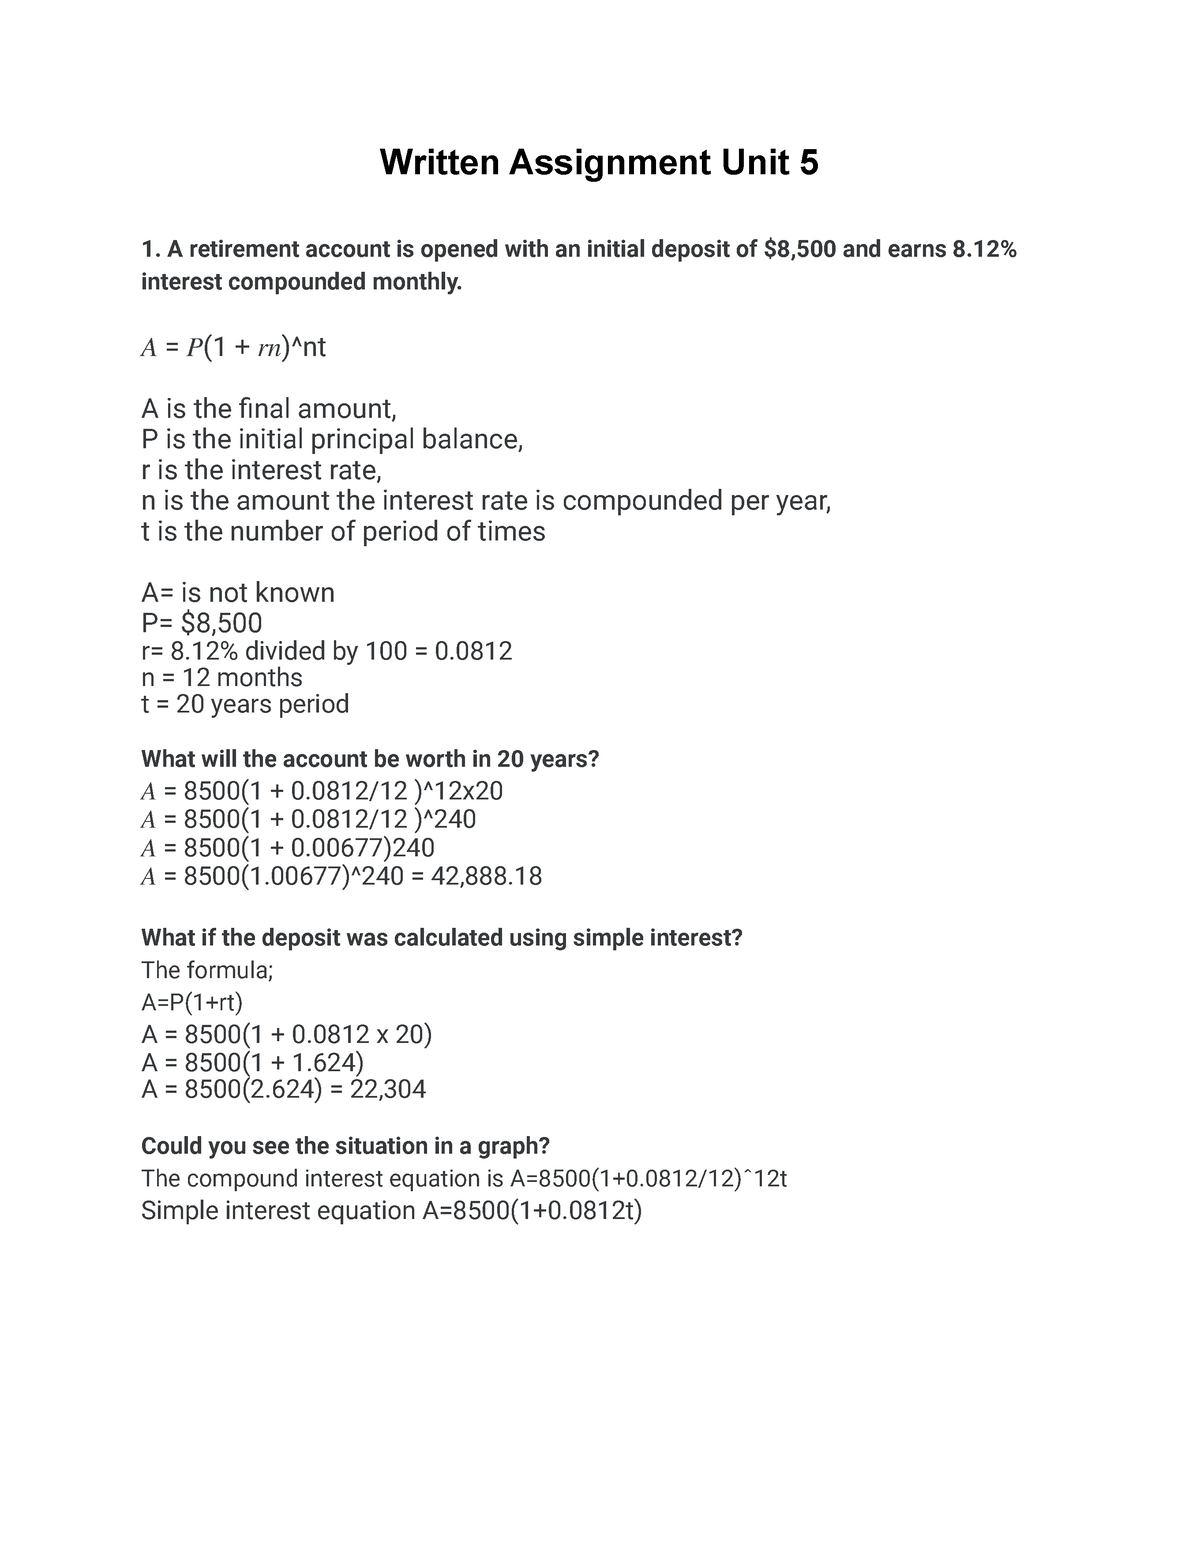 math 1201 written assignment unit 5